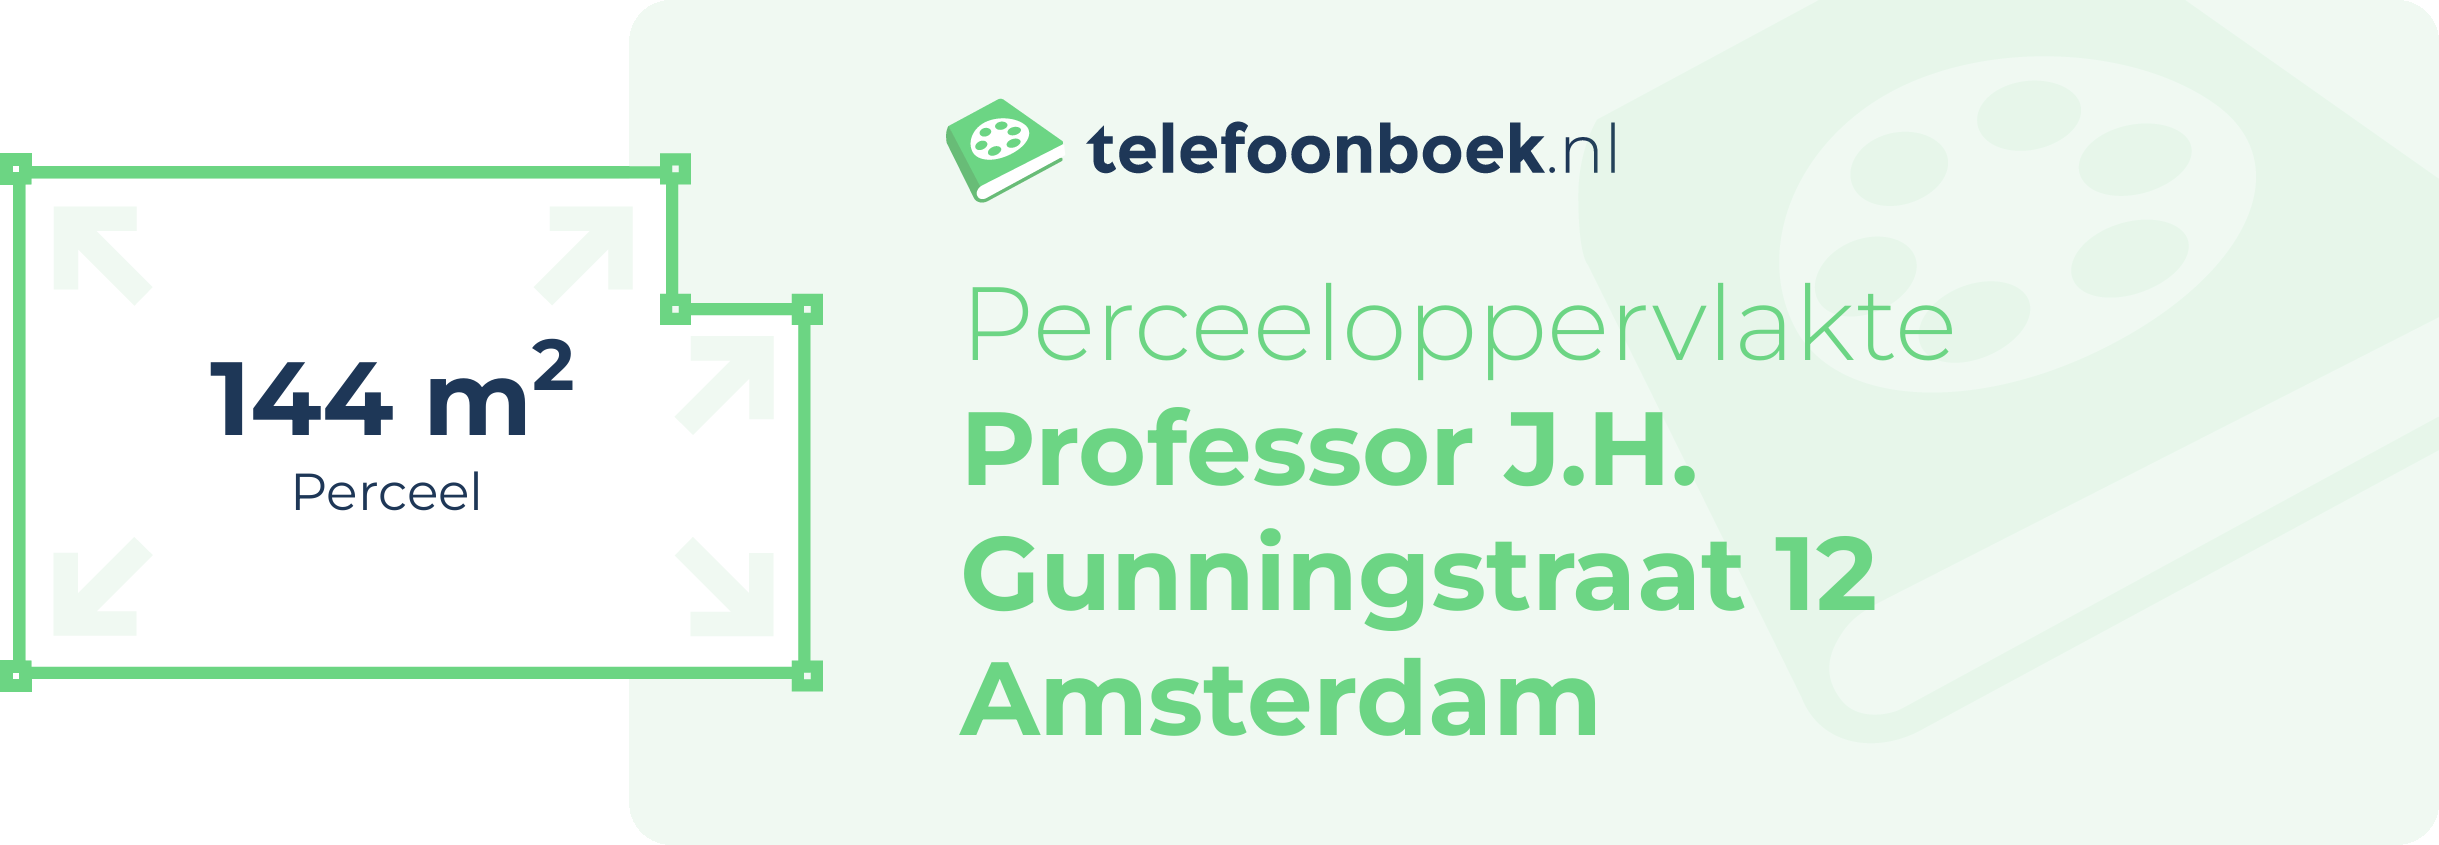 Perceeloppervlakte Professor J.H. Gunningstraat 12 Amsterdam